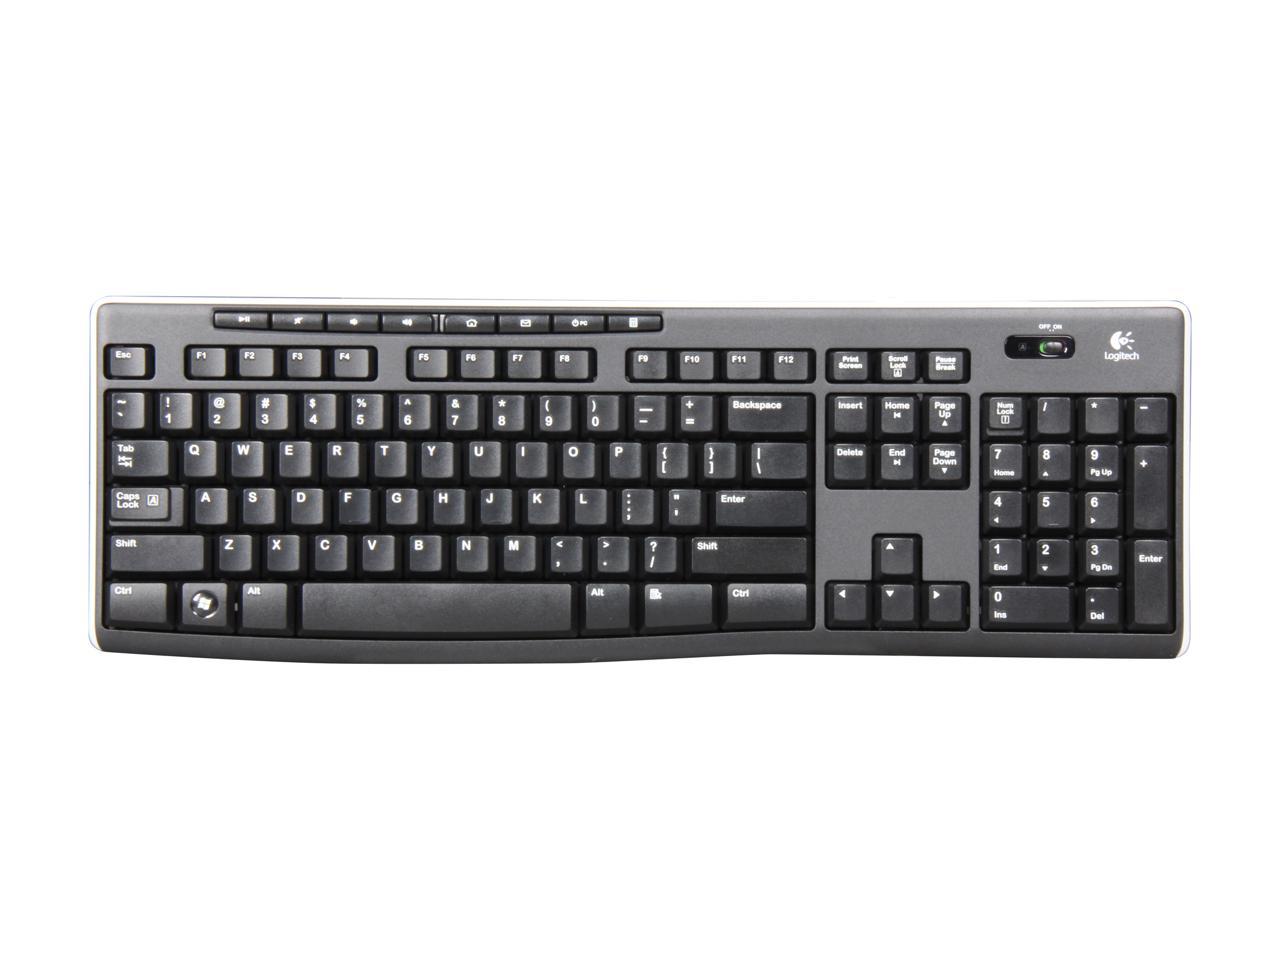 Logitech K270 2.4GHz Wireless Keyboard - Black